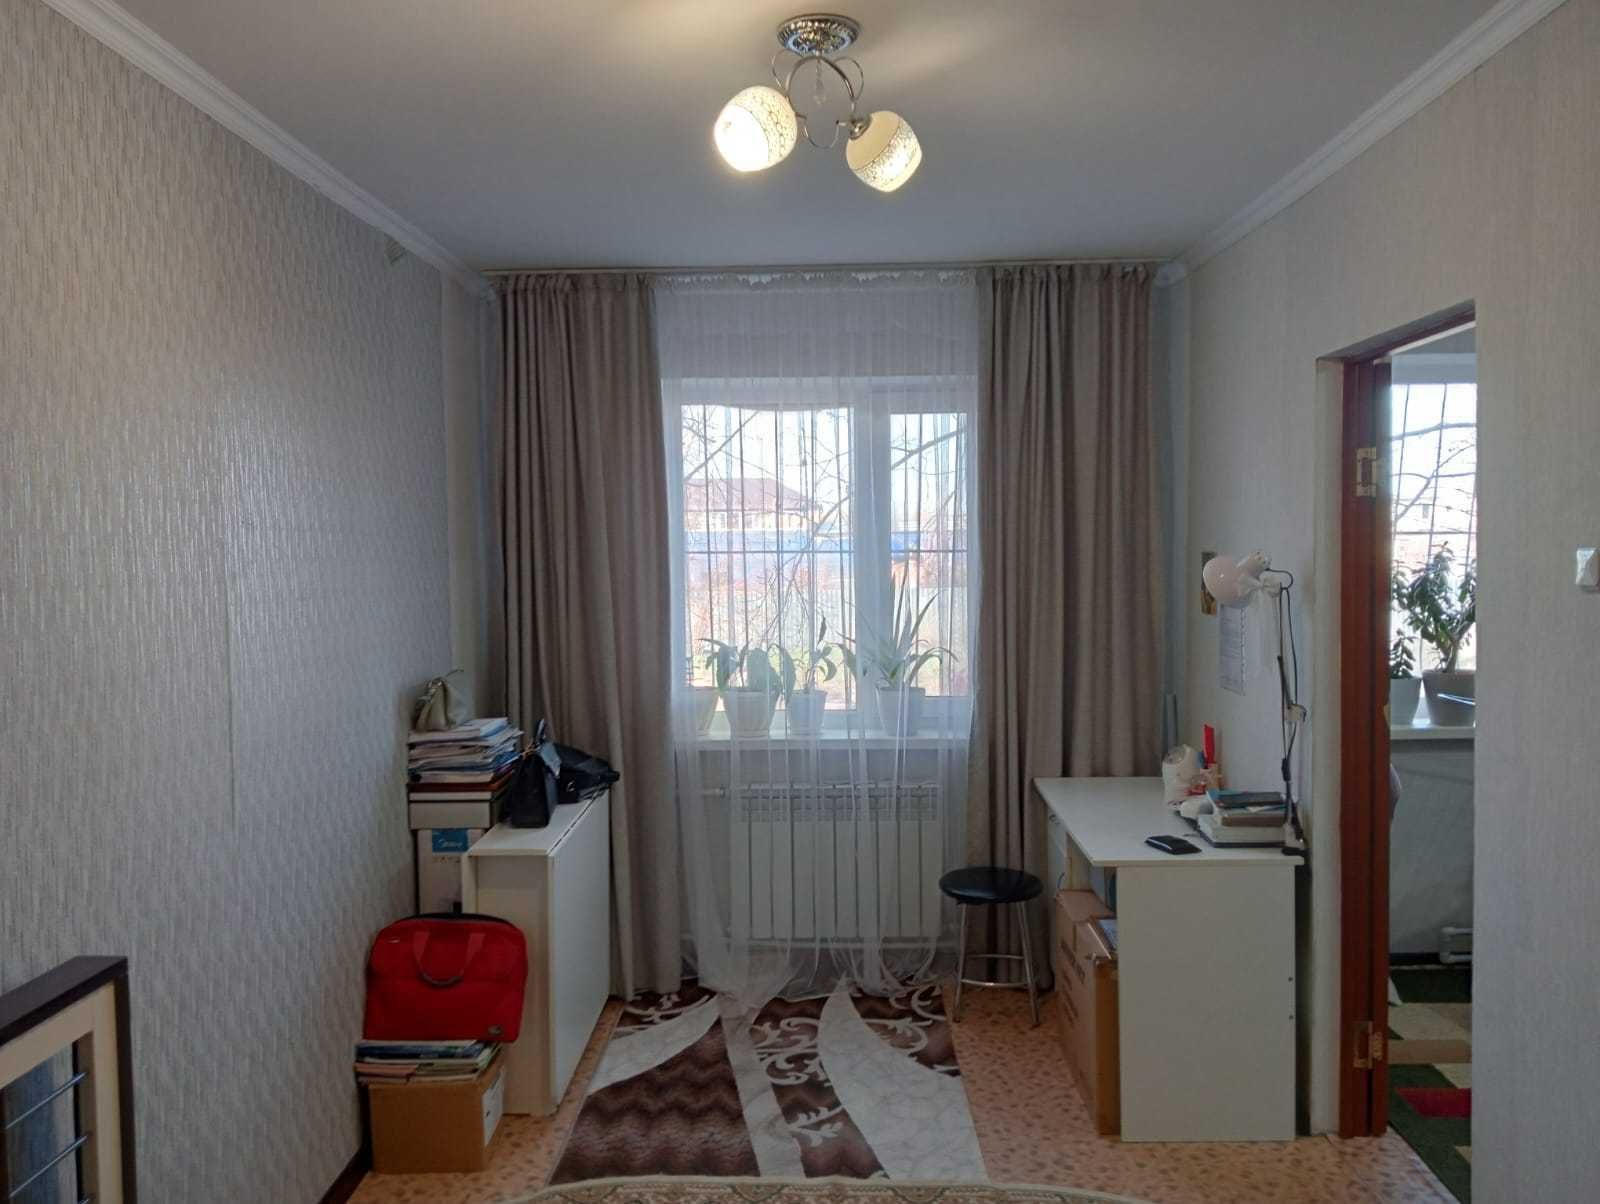 Квартира 2-ком,1этаж. ул.Сакен Сейфуллина